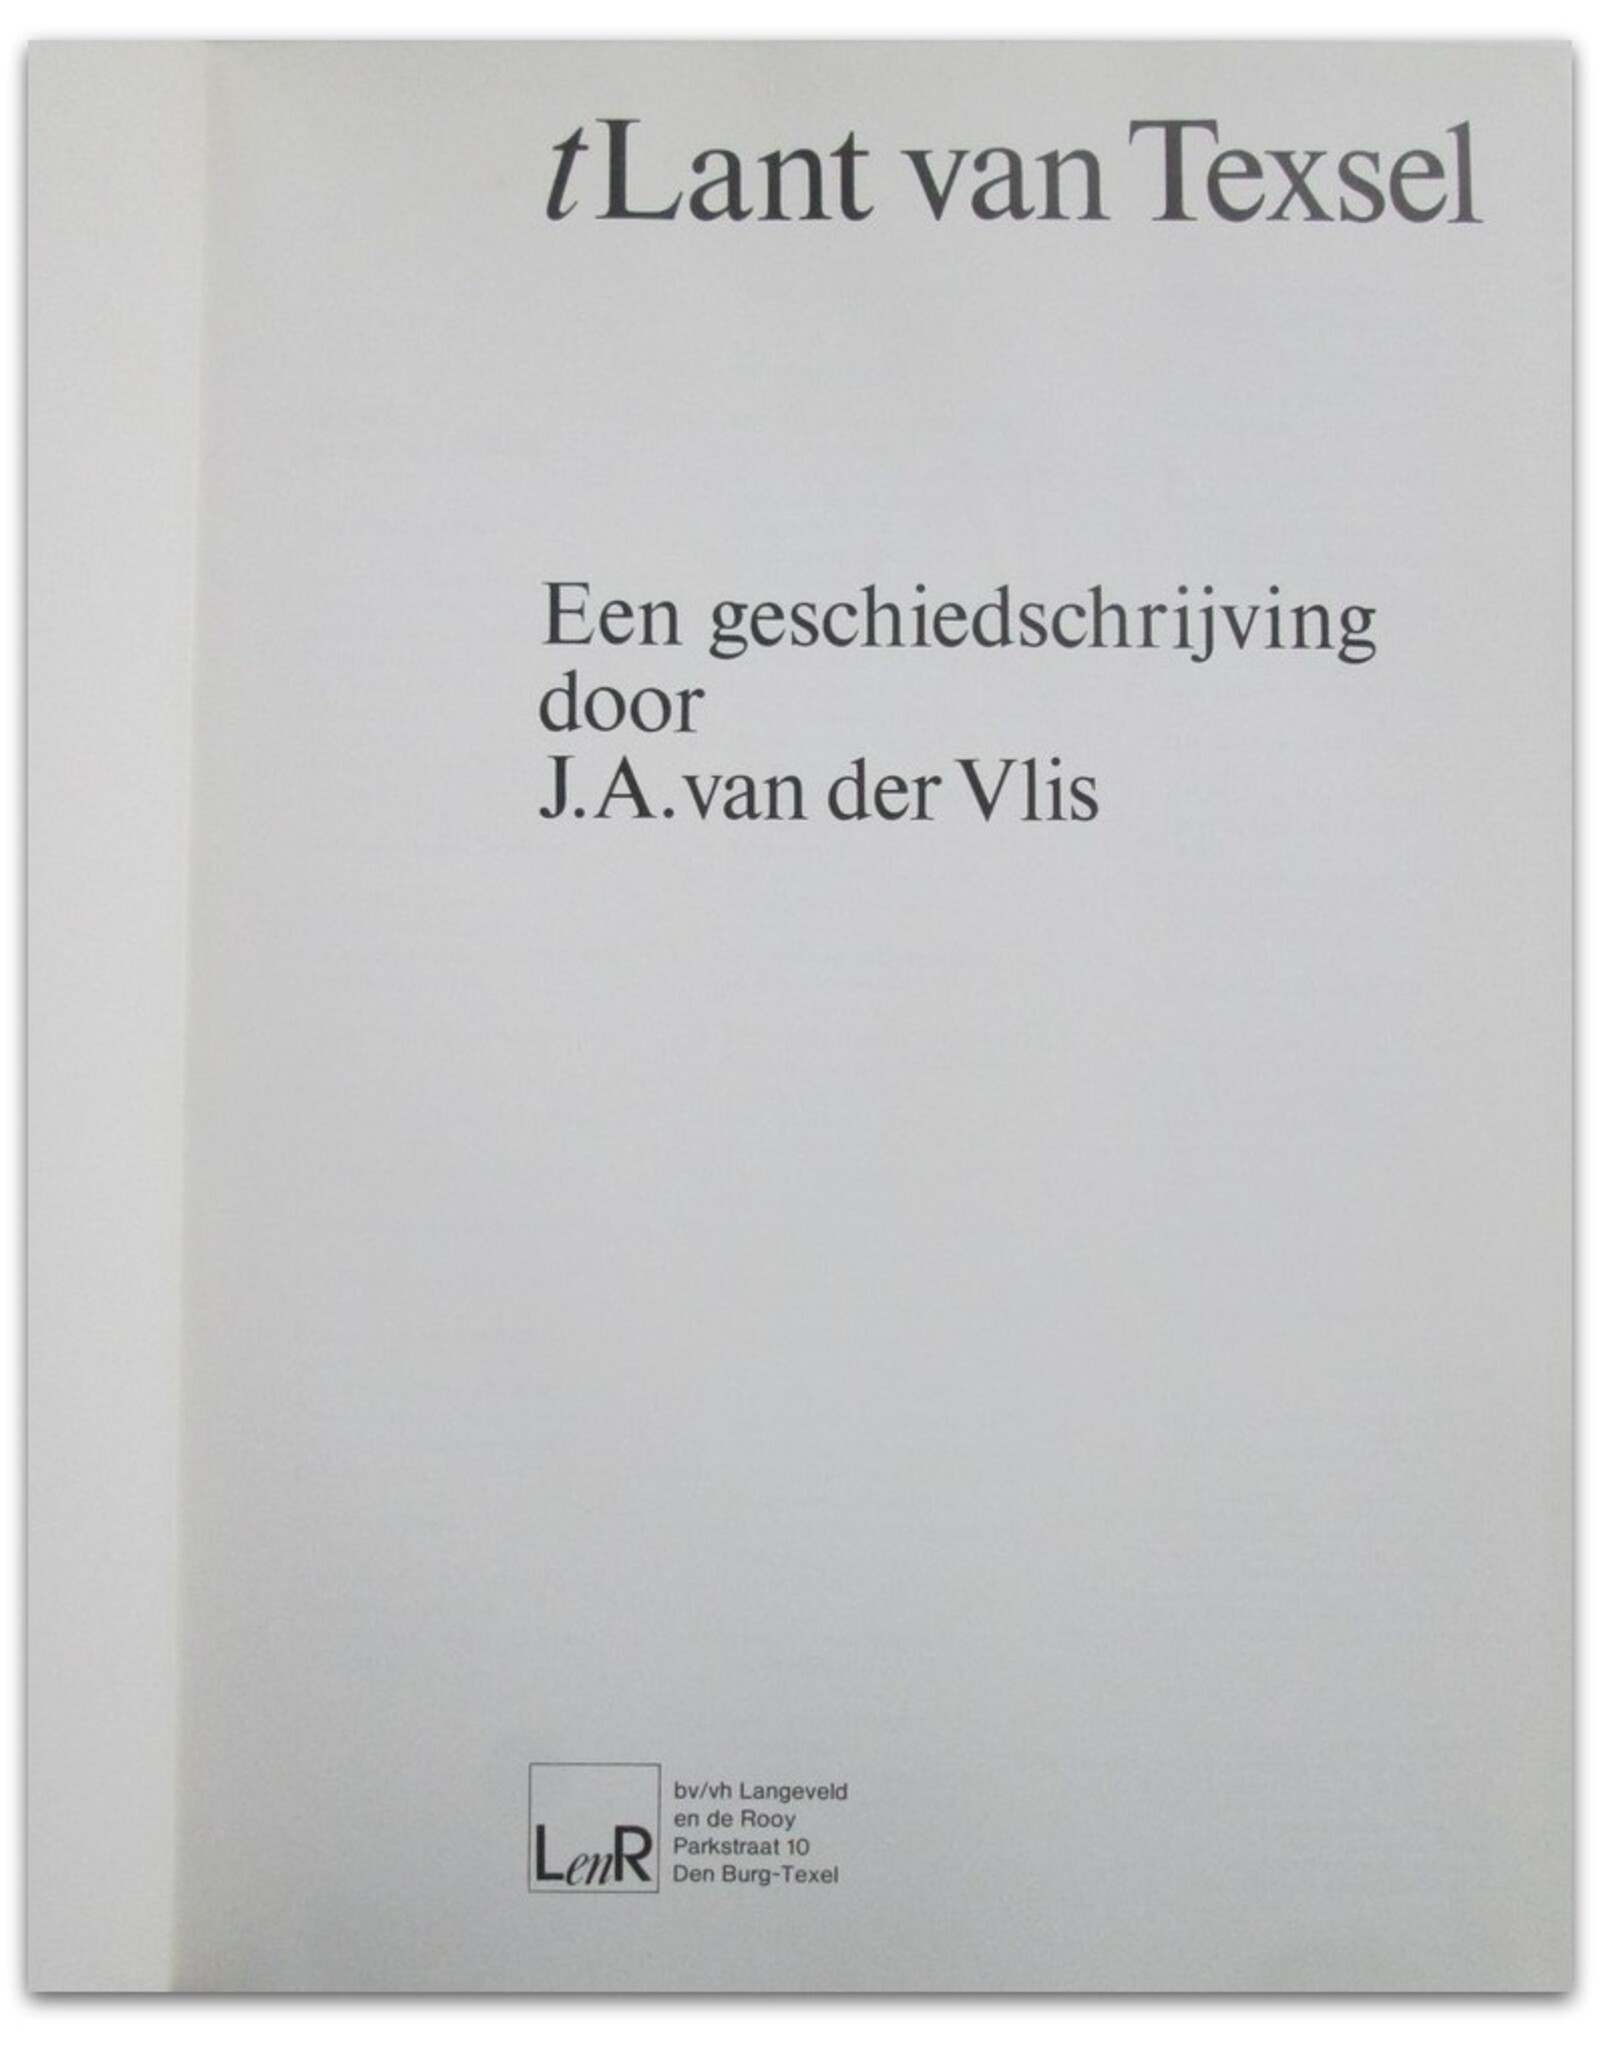 J.A. van der Vlis - tLant van Texsel